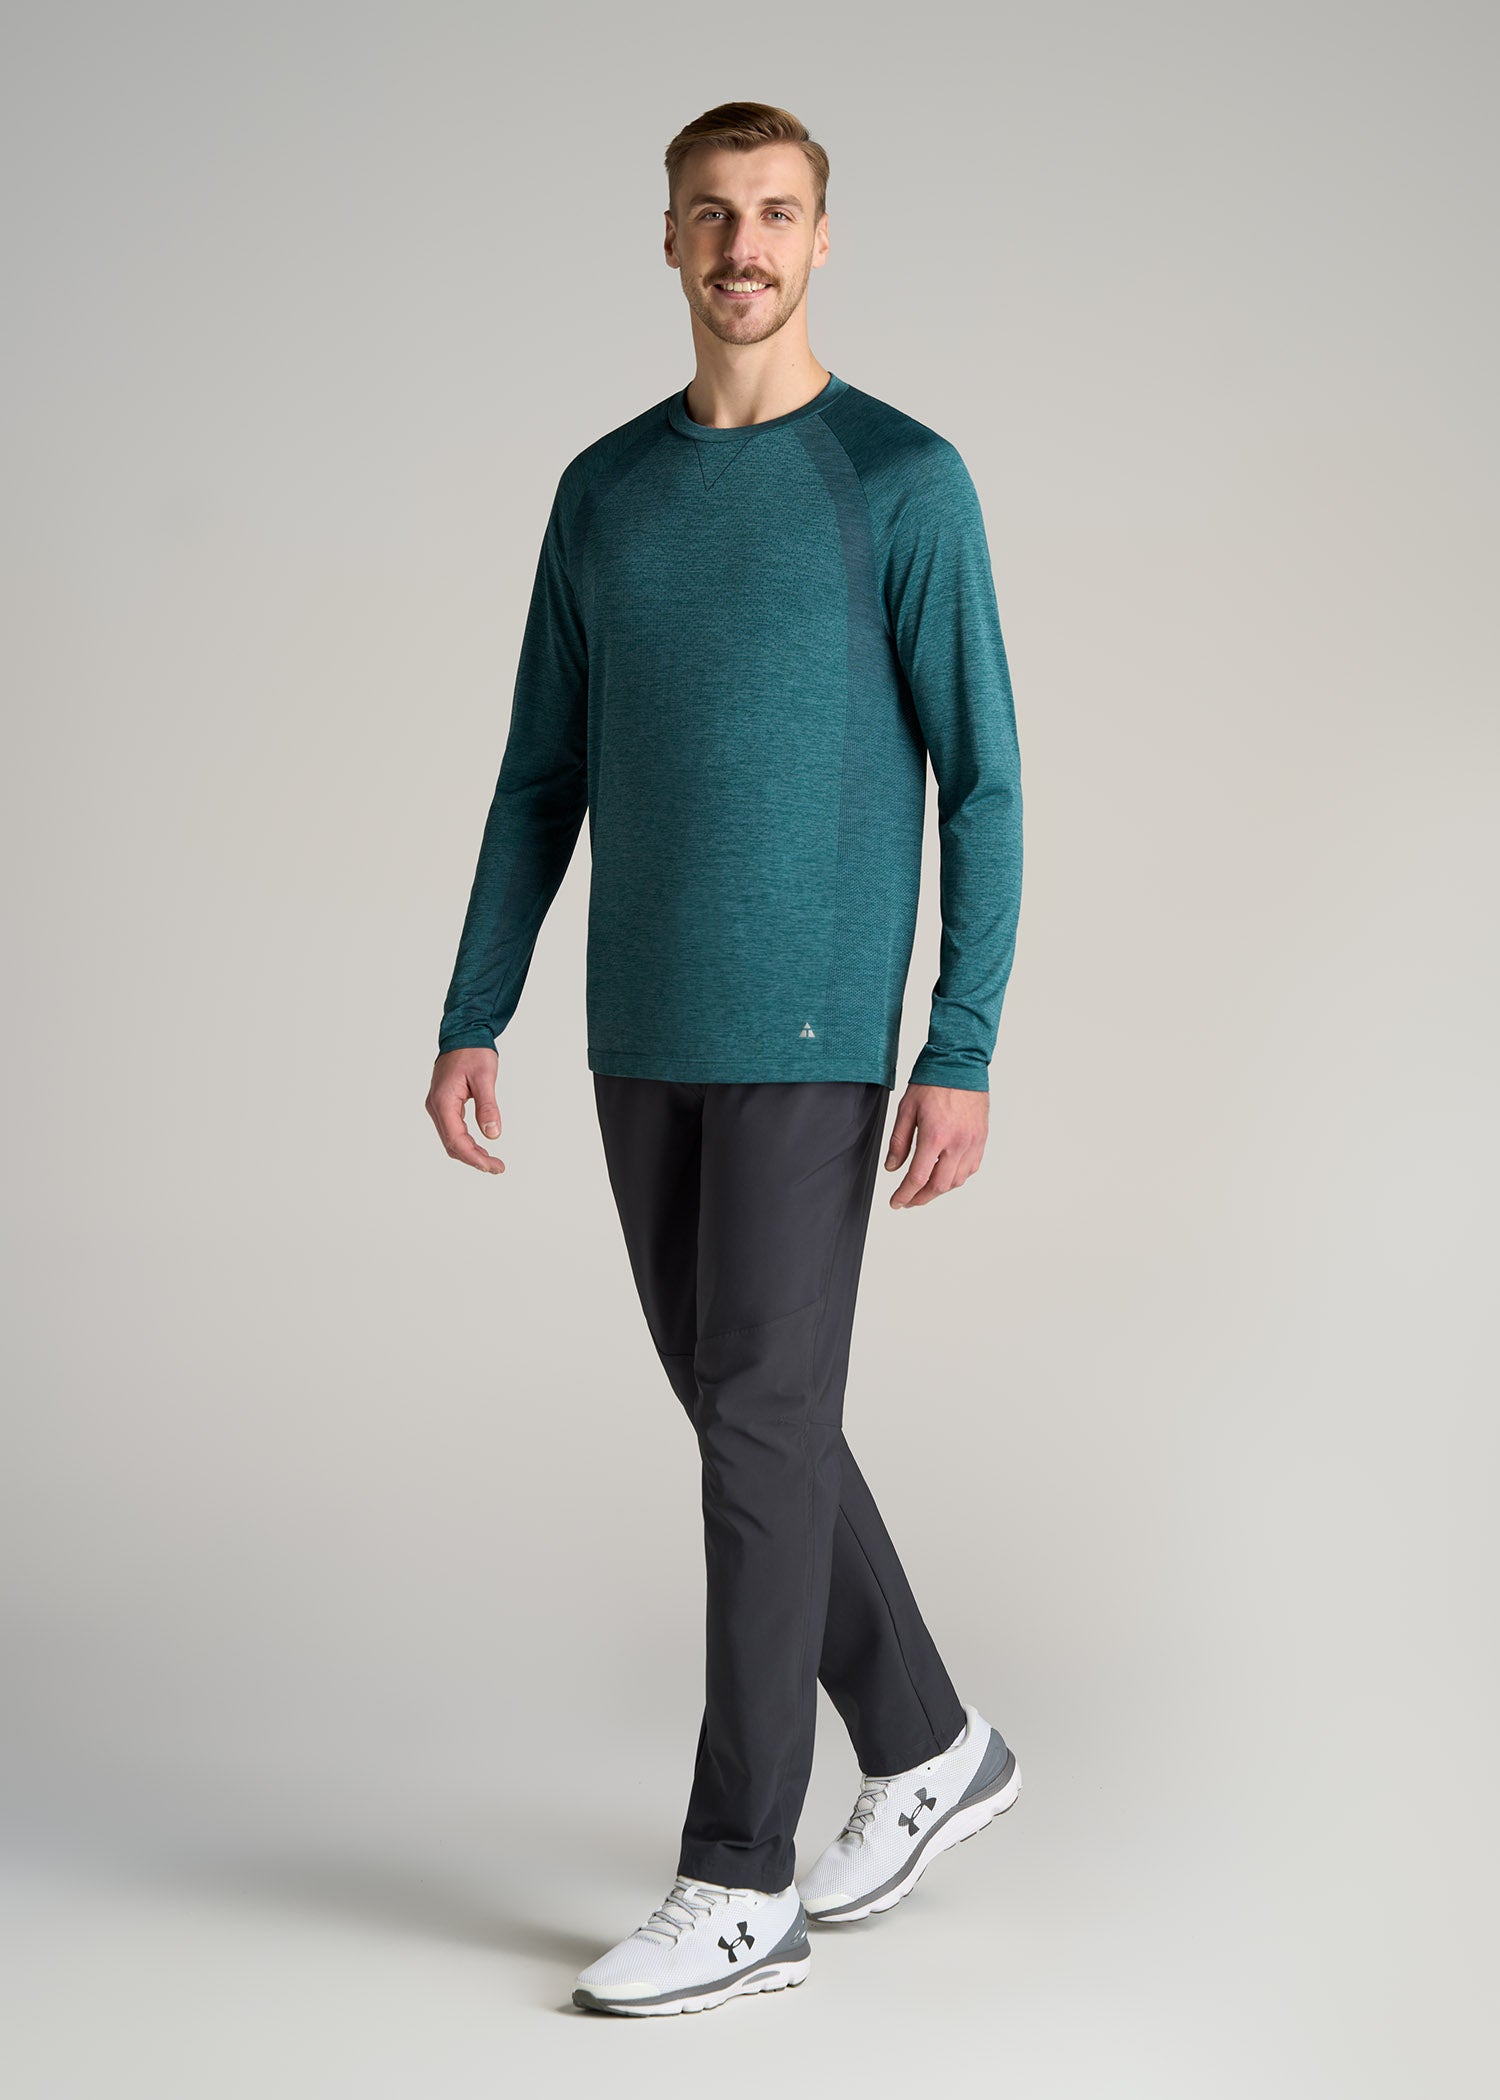 Alloy Basics – Tall Long Sleeve Bodysuit